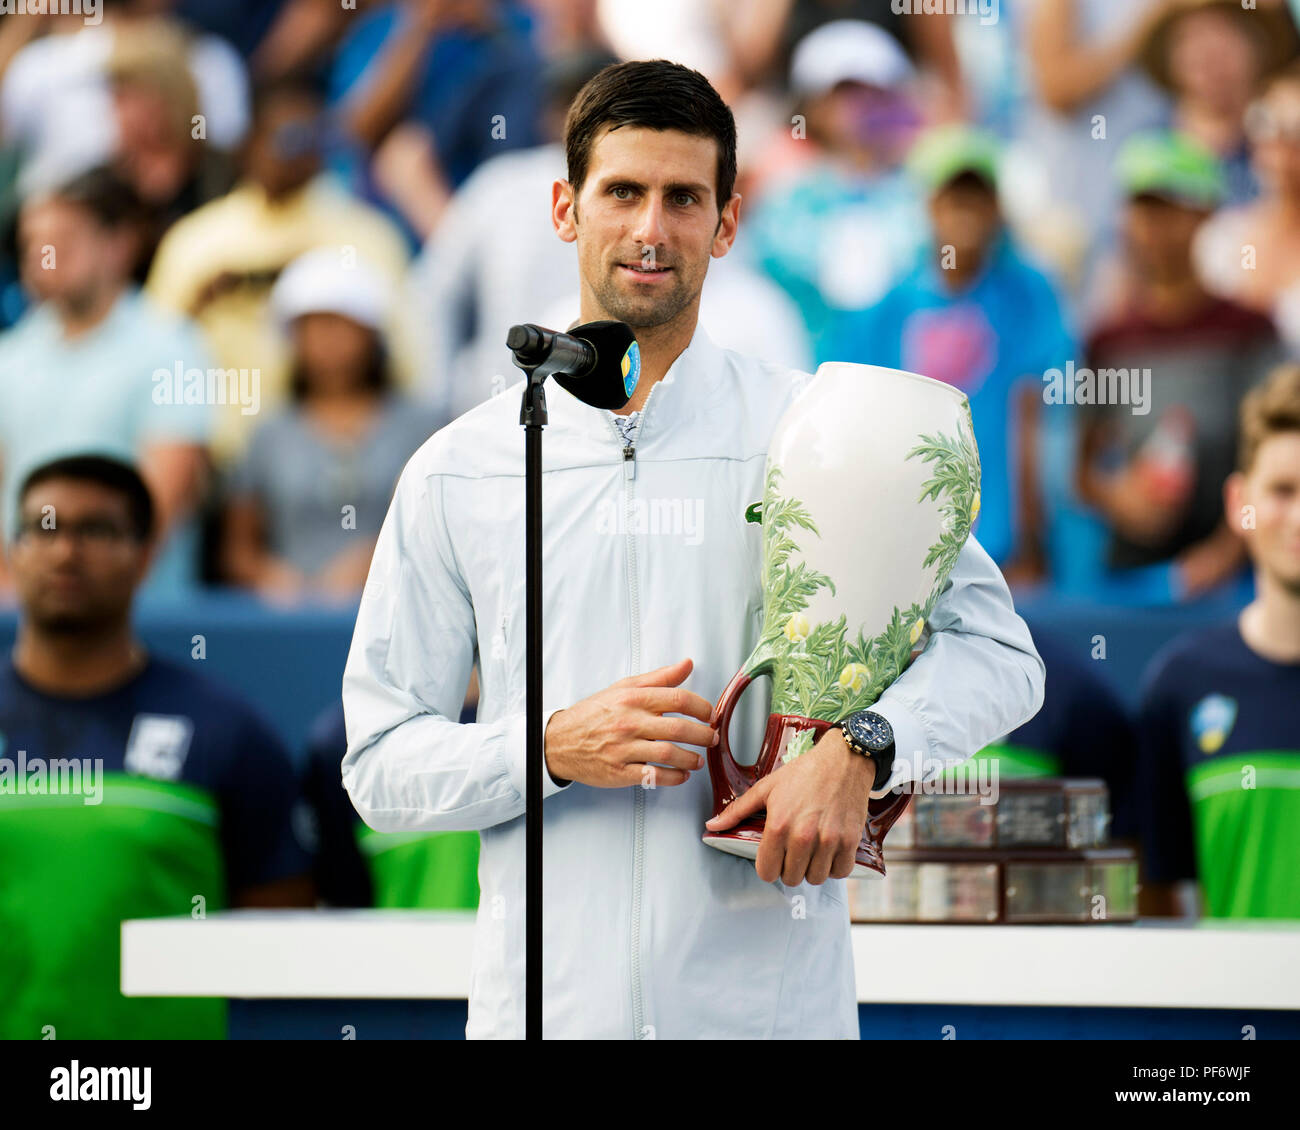 Mason, Ohio, USA. 19 août 2018 : Novak Djokovic (SRB) s'adresse à la foule après sa victoire à la région du sud-ouest de l'ouvrir à Mason, Ohio, USA. Brent Clark/Alamy Live News Banque D'Images